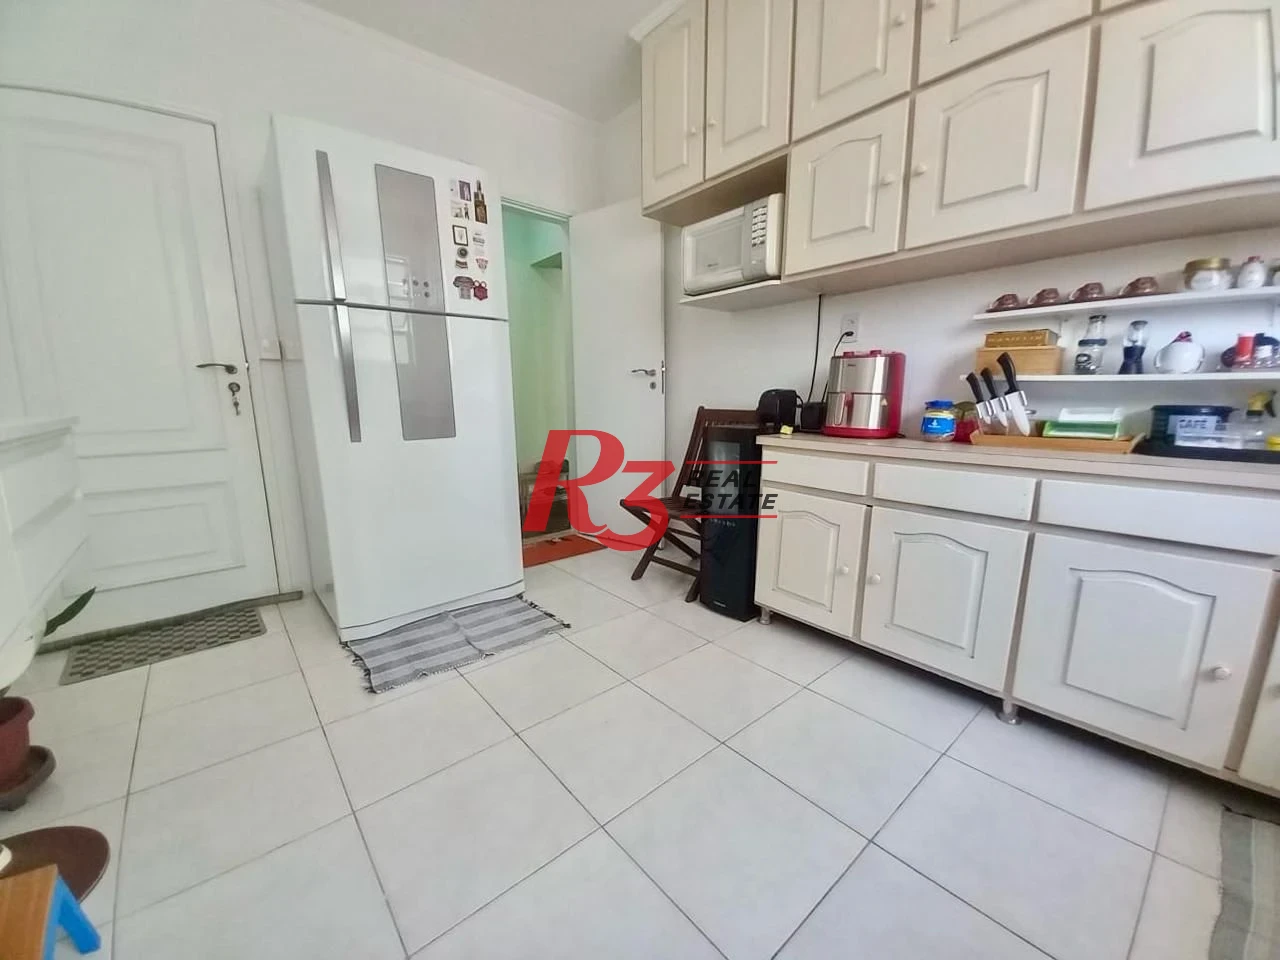 Apartamento à venda, 108 m² por R$ 750.000,00 - Pompéia - Santos/SP